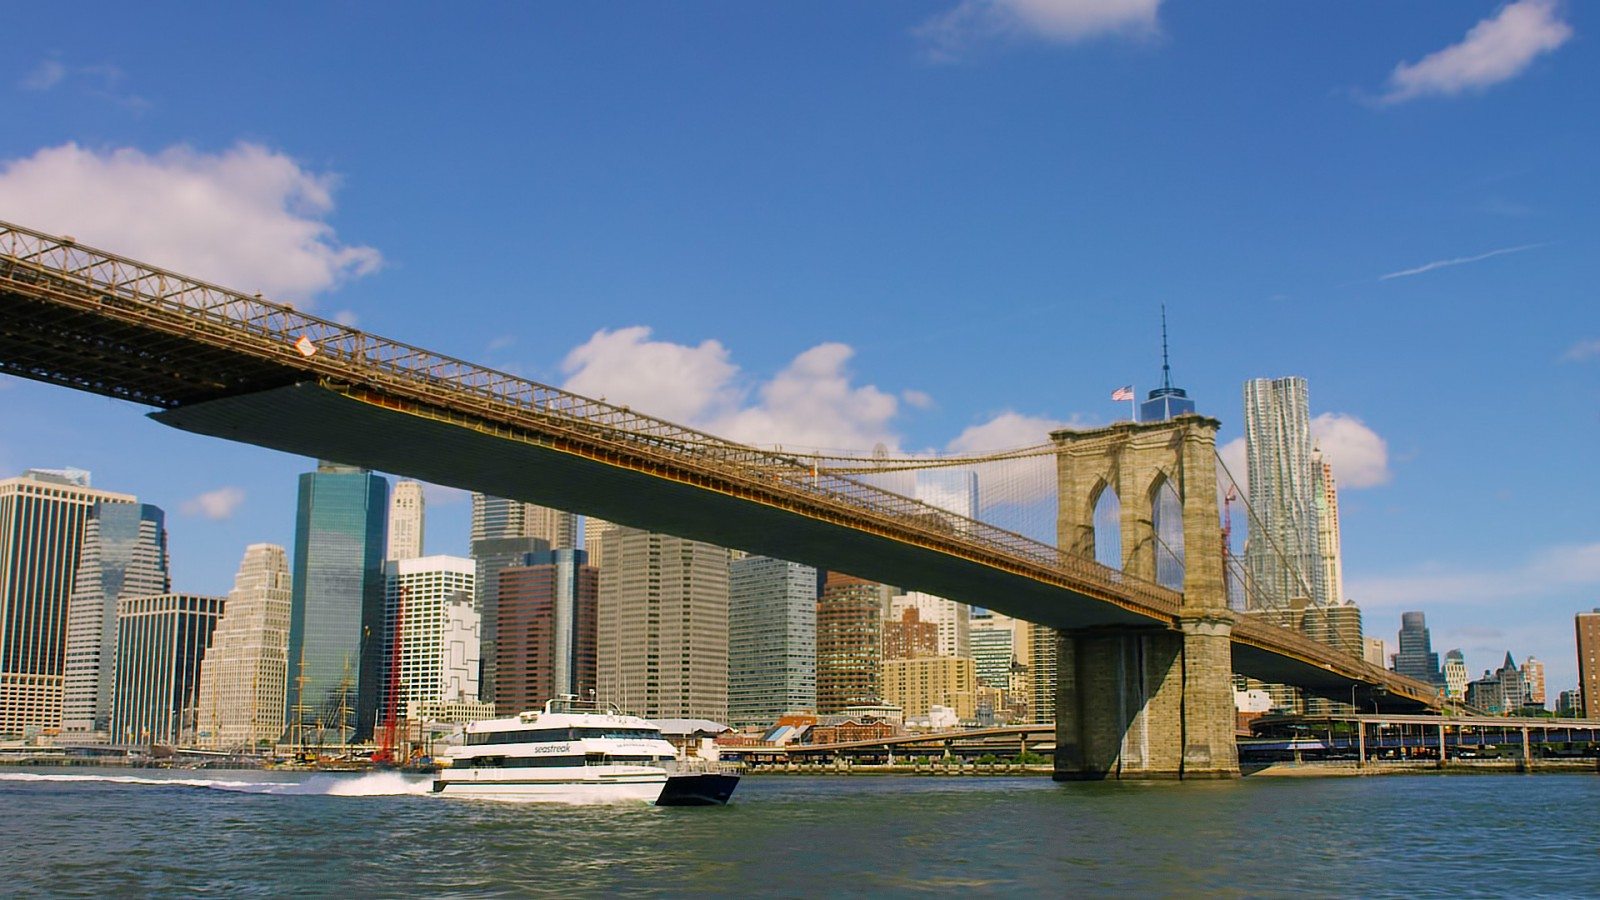 propeller Katholiek Flitsend New York City | New Jersey Commute By Seastreak Ferry